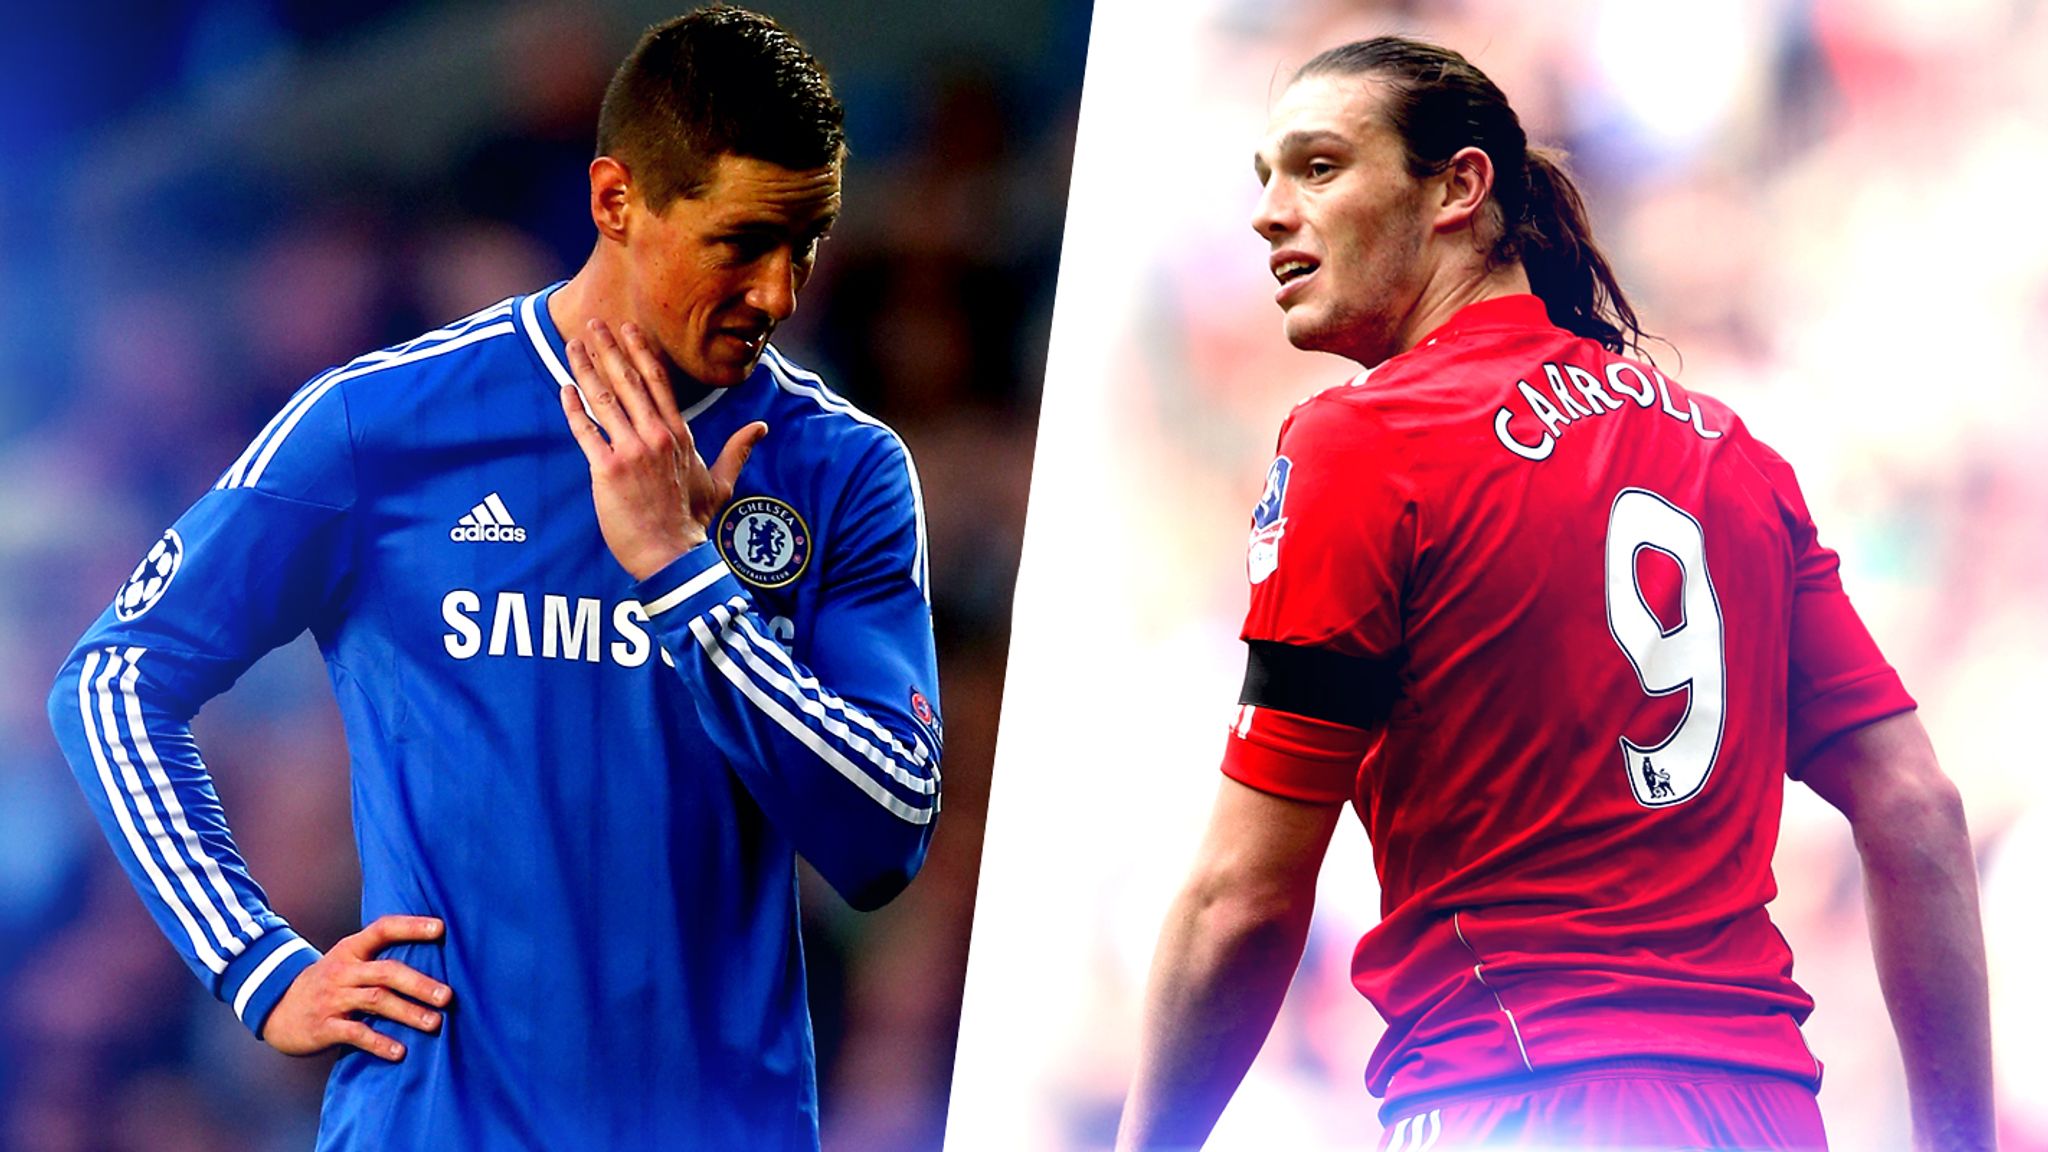 ĐH chuyển nhượng mùa Đông tệ nhất Premier League: Sanchez và Torres dẫn đầu - Ảnh 3